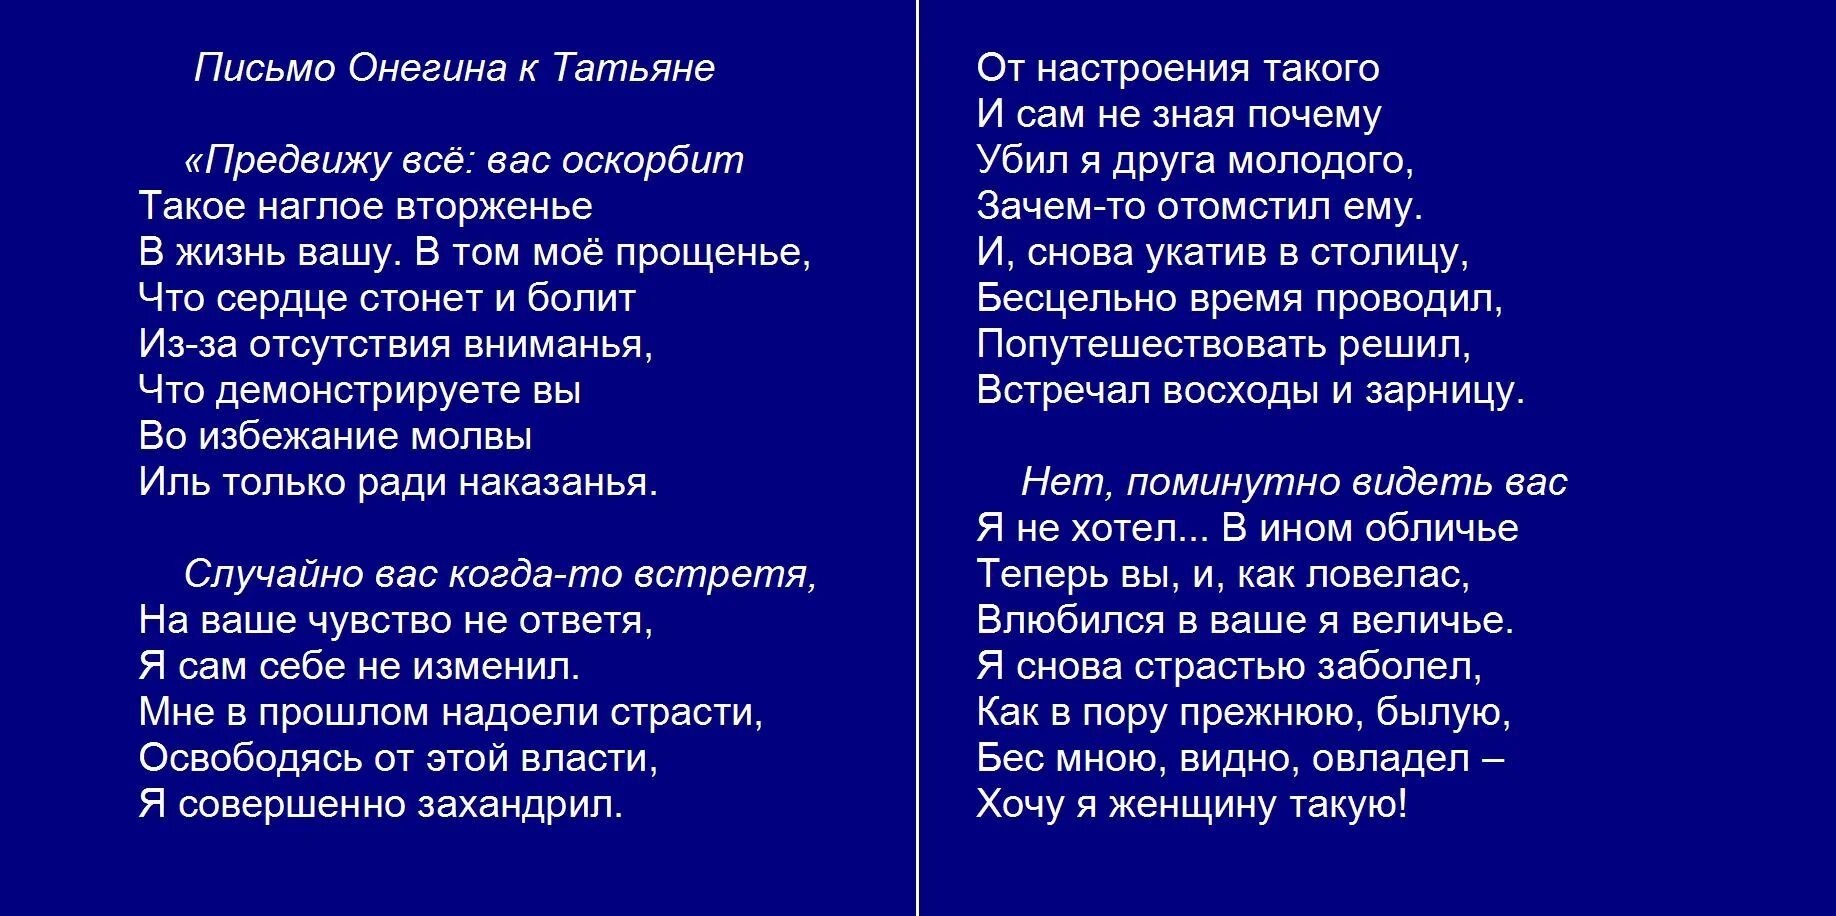 Письмо татьяны полностью стих. Письмо Татьяны к Онегину наизусть. Пушкин письмо Татьяны.